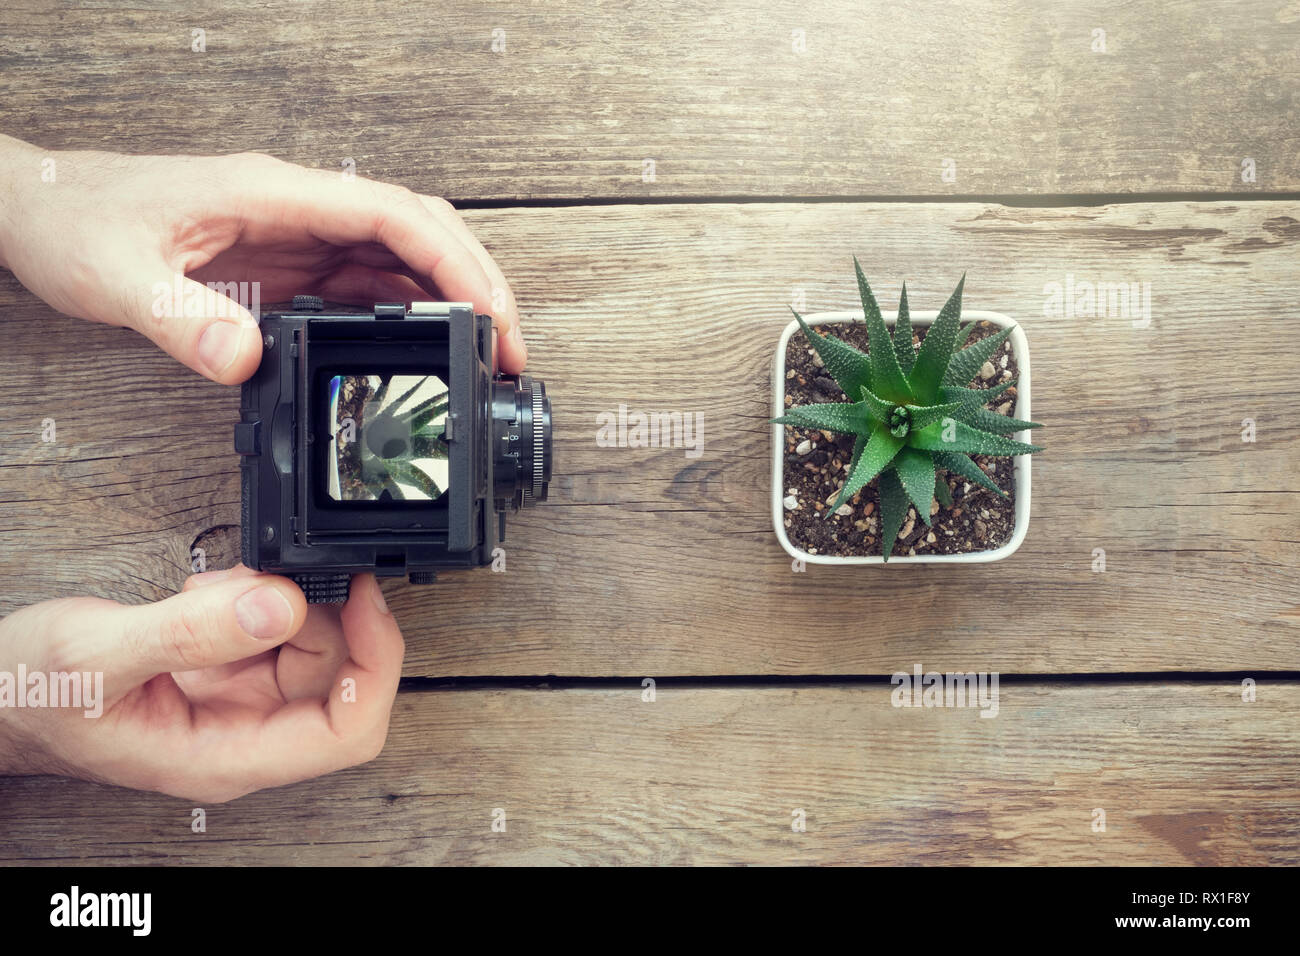 Photographe de prendre une photo de succulentes en utilisant un appareil photo. Vue d'en haut. Banque D'Images